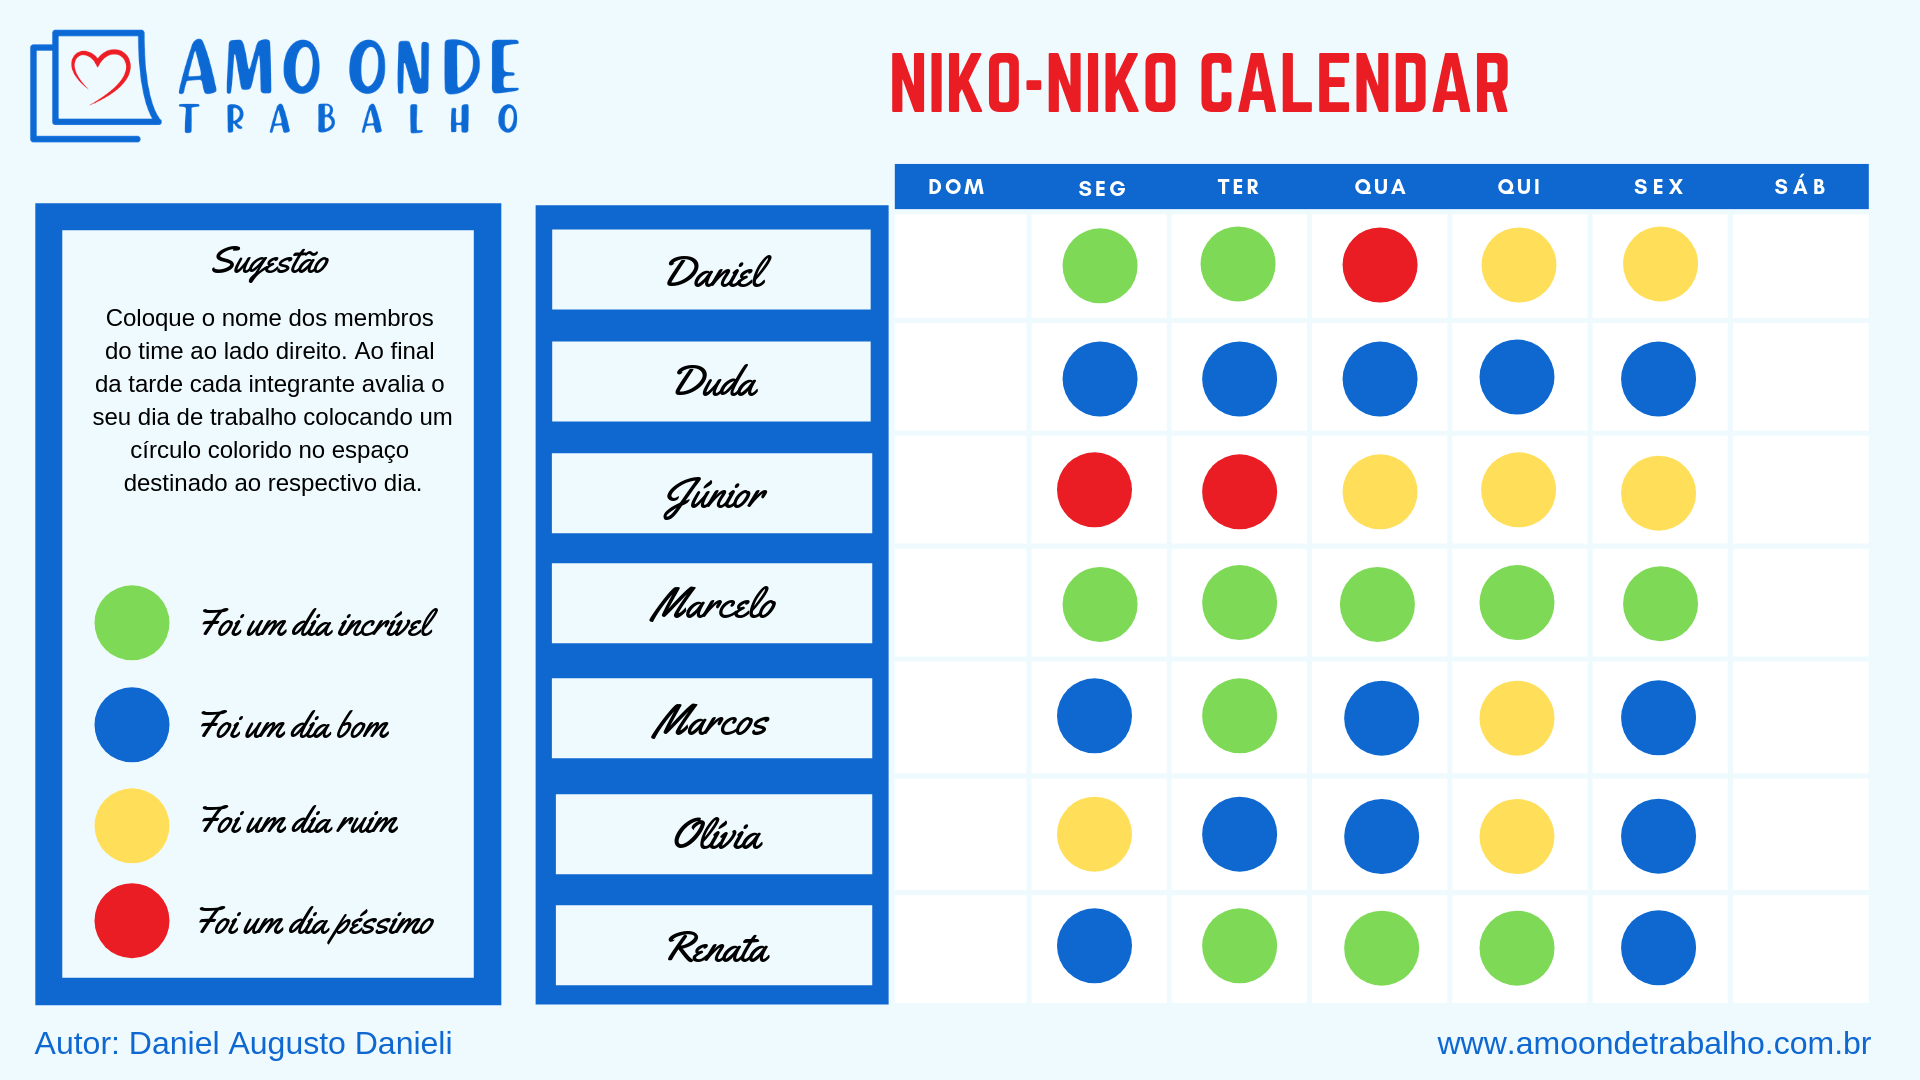 Exemplo de um Calendário Niko-Niko baseado em uma semana de trabalho da equipe.